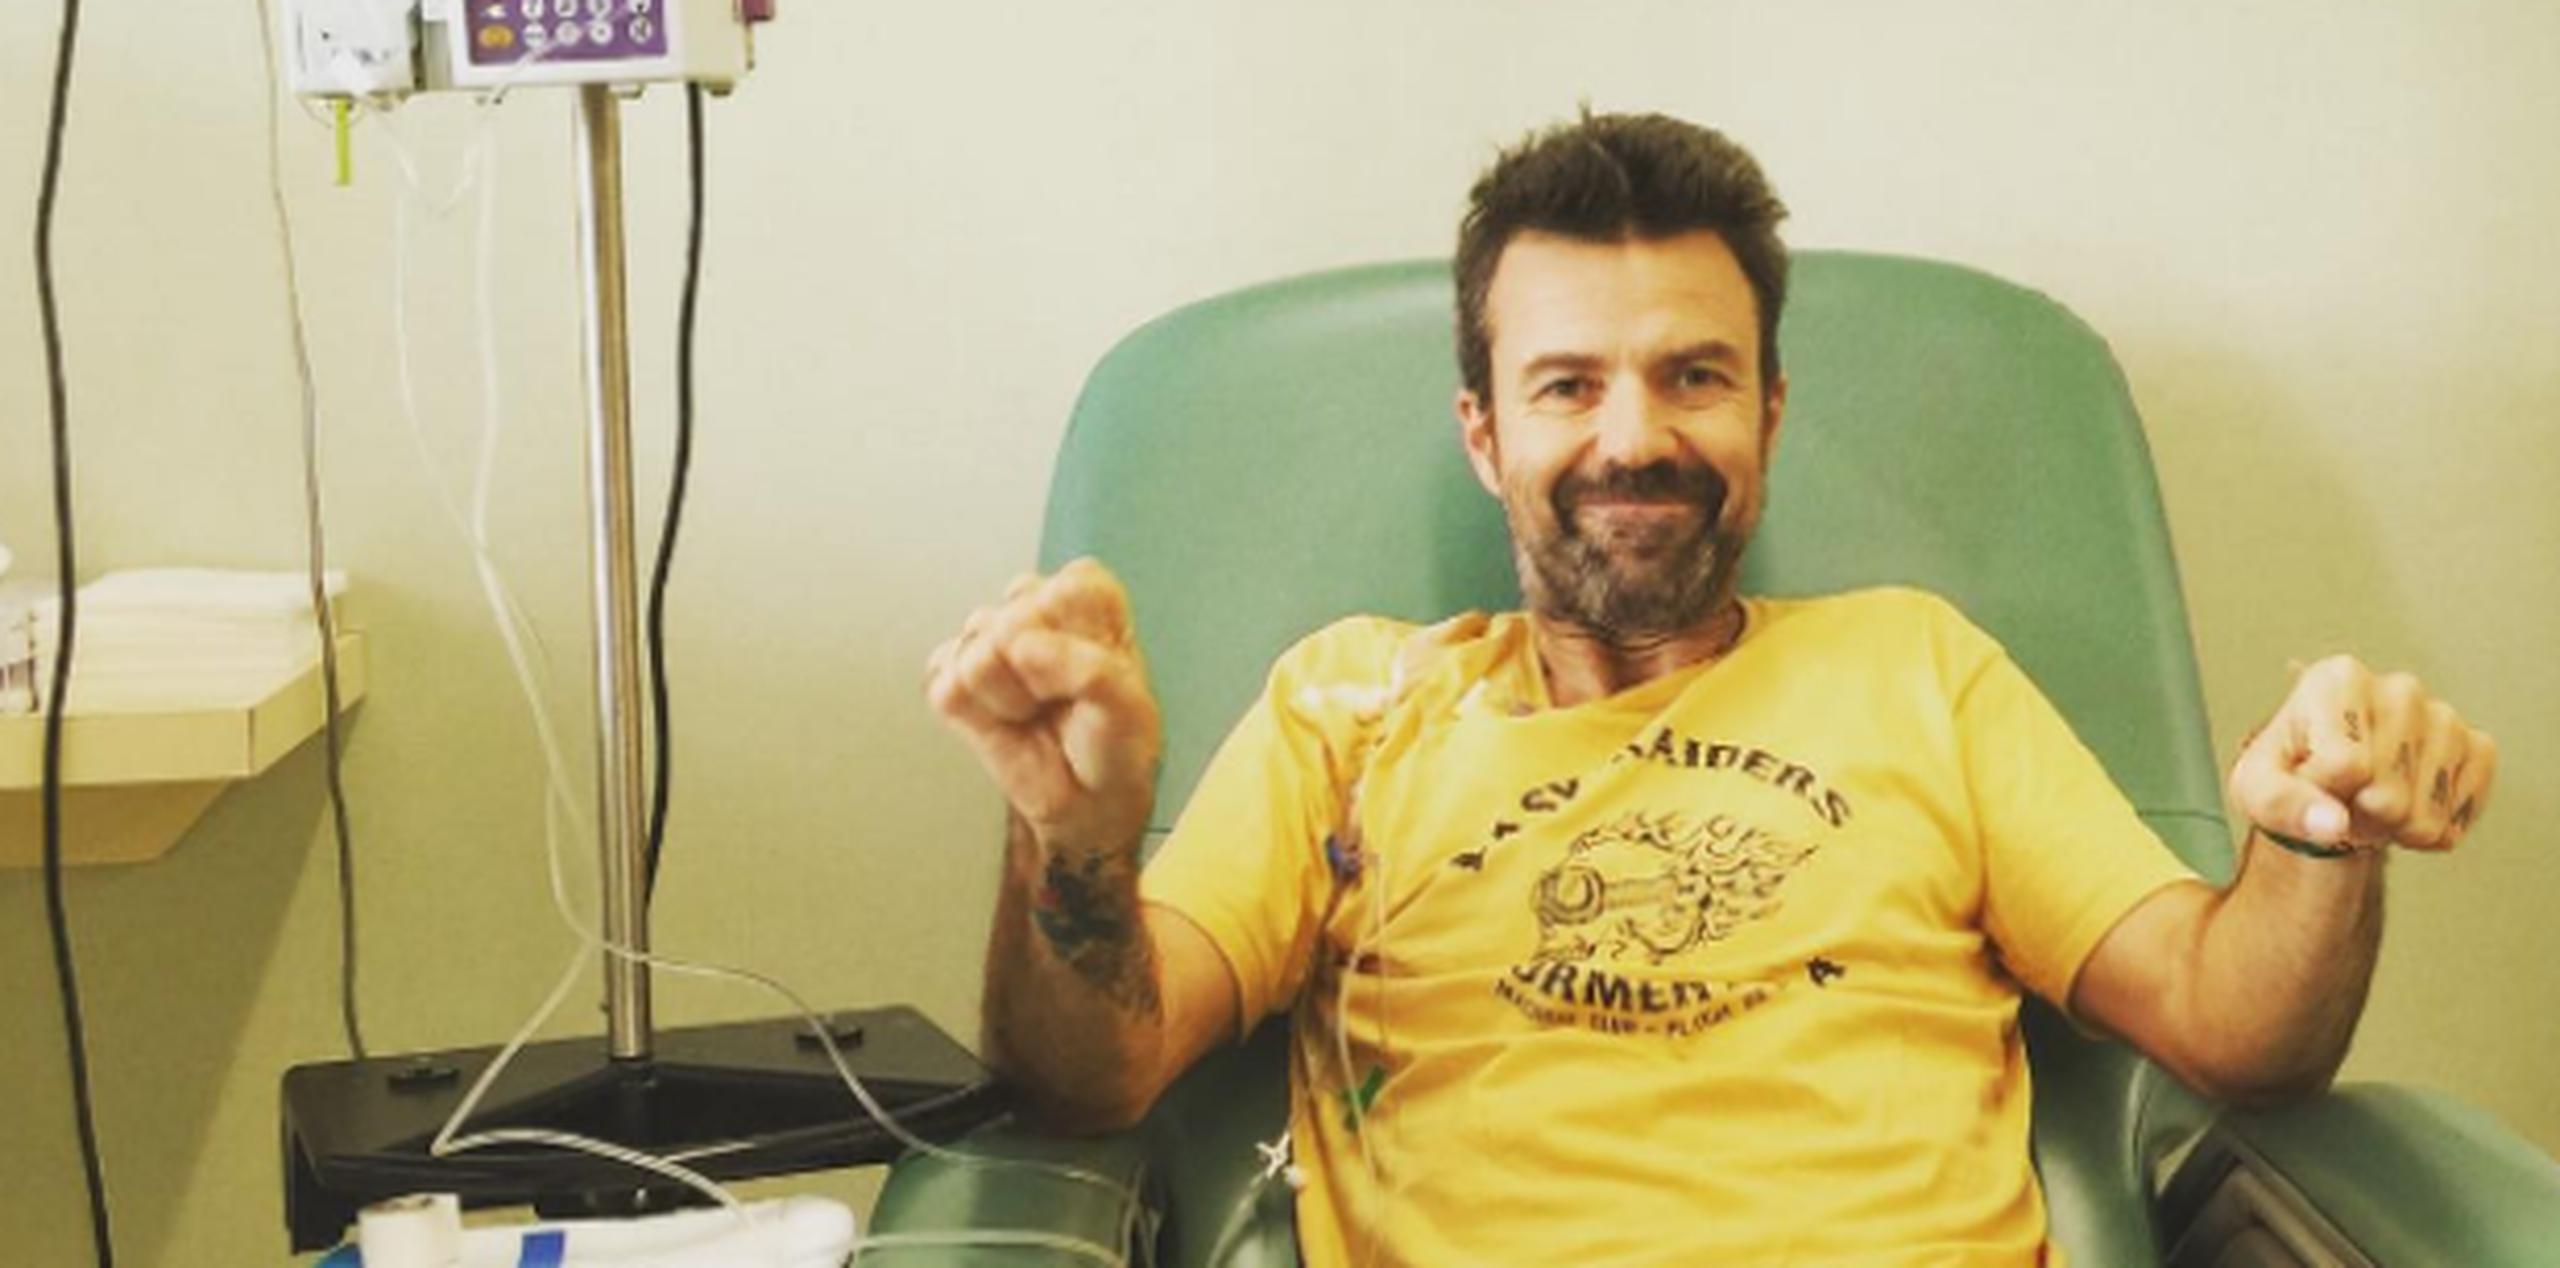 El cantante aseguró que el cáncer lo ha vuelto un hombre feliz. (Instagram)